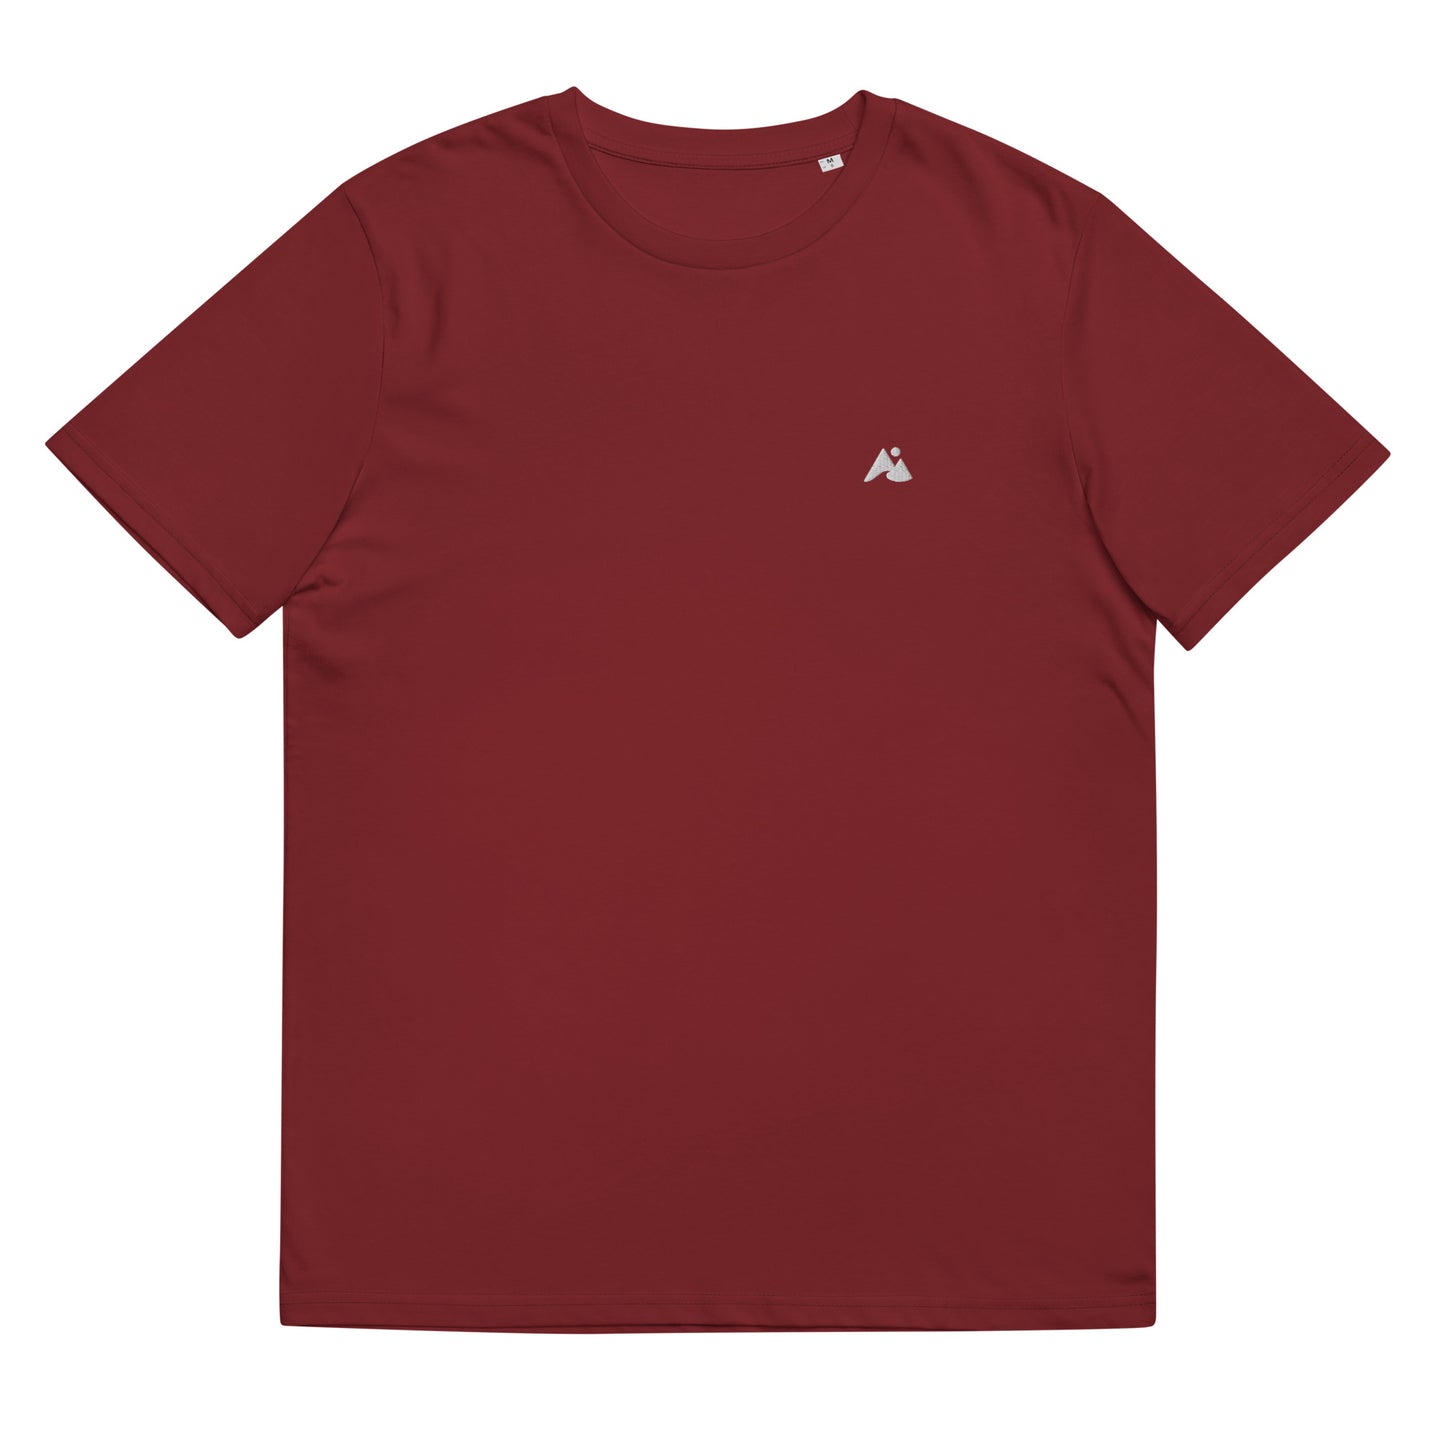 Il s'agit d'une image d'un t-shirt unisexe de couleur bordeaux. Le t-shirt est présenté sur un fond blanc. Il y a un petit logo montagne et vague blanc sur la poitrine côté cœur.